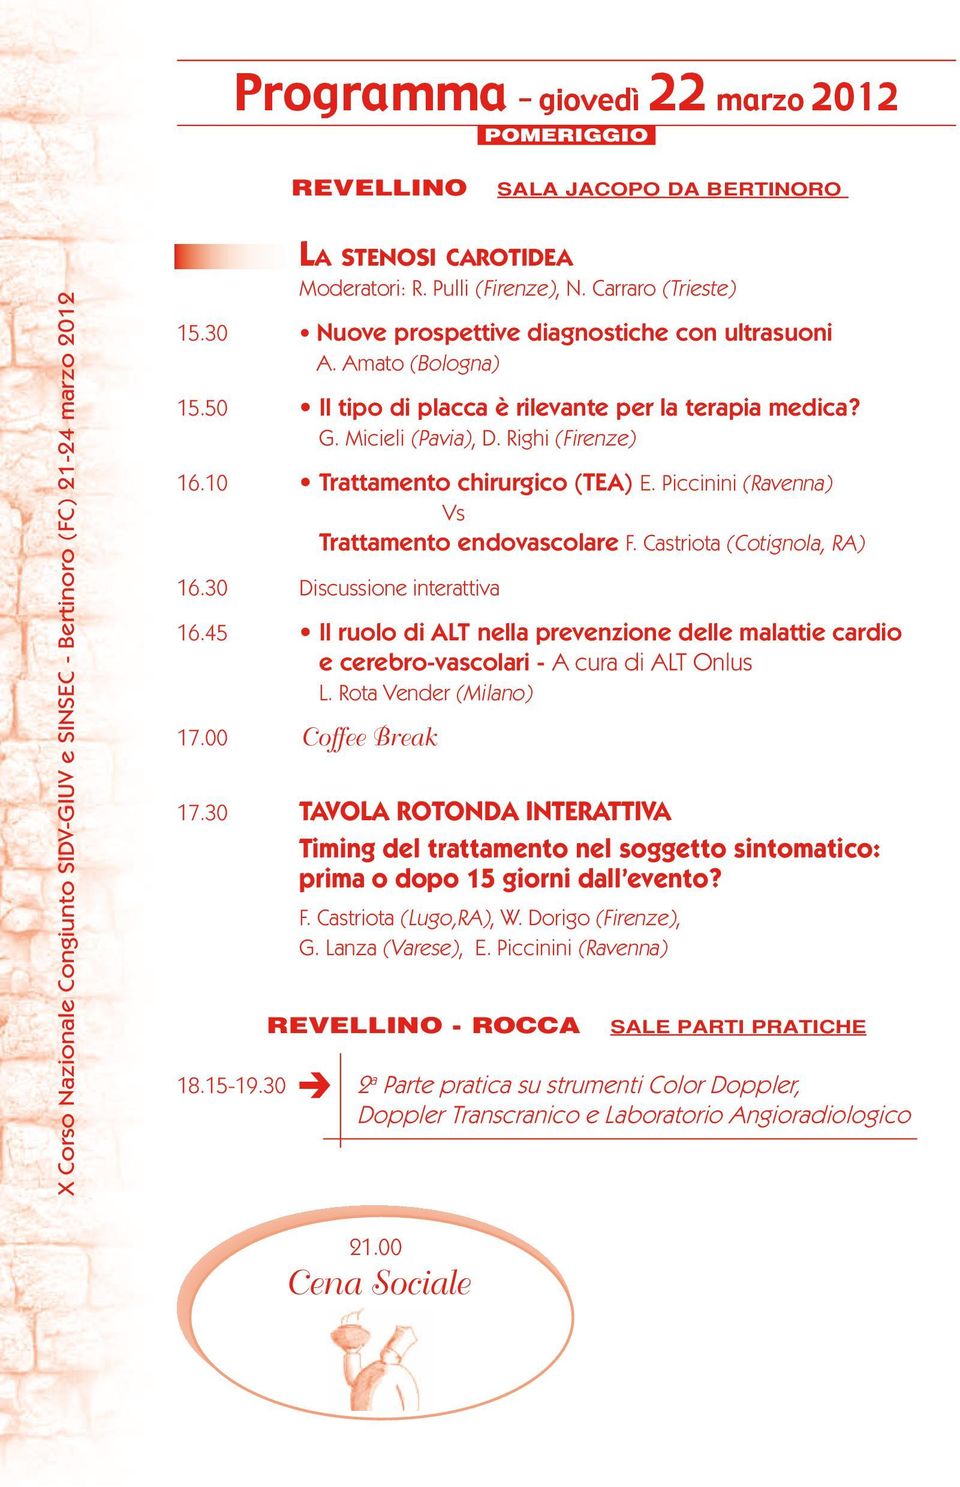 Castriota (Cotignola, RA) 16.30 Discussione interattiva 16.45 Il ruolo di ALT nella prevenzione delle malattie cardio e cerebro-vascolari - A cura di ALT Onlus L. Rota Vender (Milano) 17.